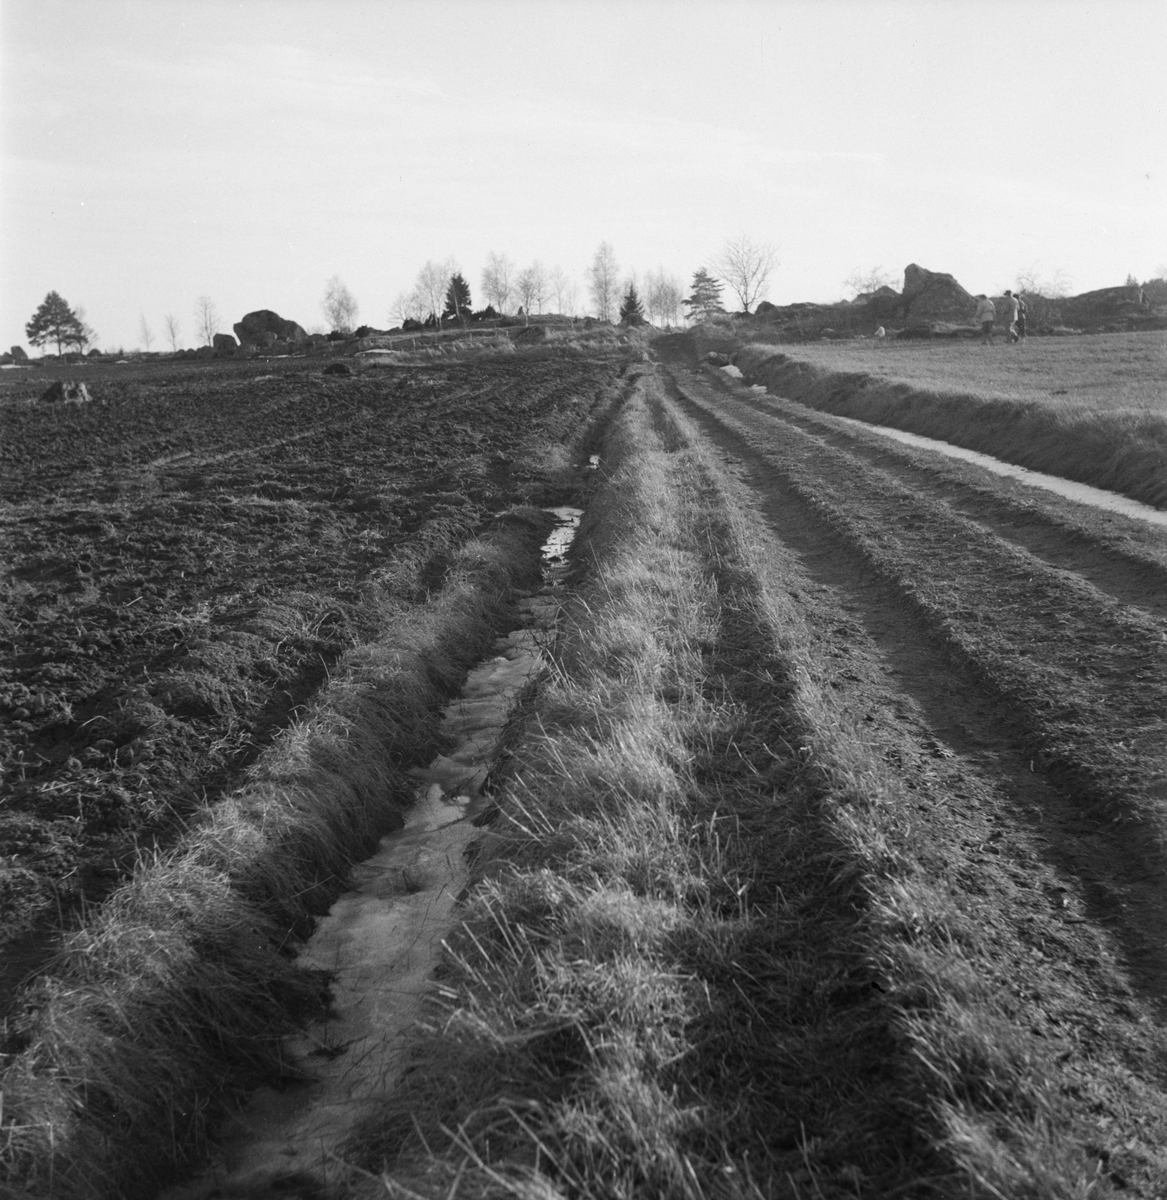 "Påskpromenaden", odlingslandskap, sannolikt Fittja socken, Uppland 1948